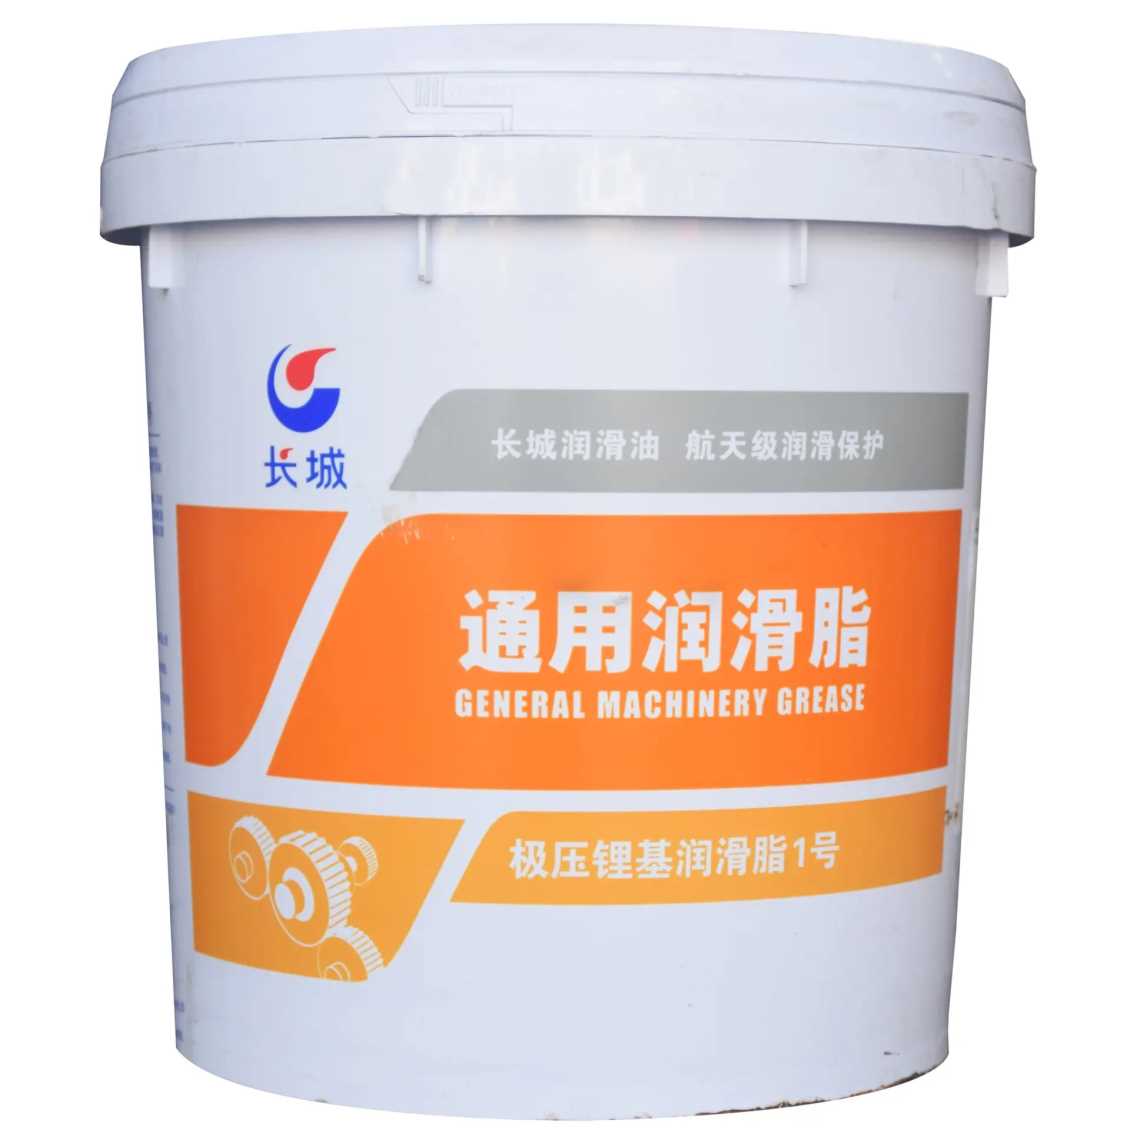 上海长城润滑脂是由复合增稠剂增稠的合成油精制而成